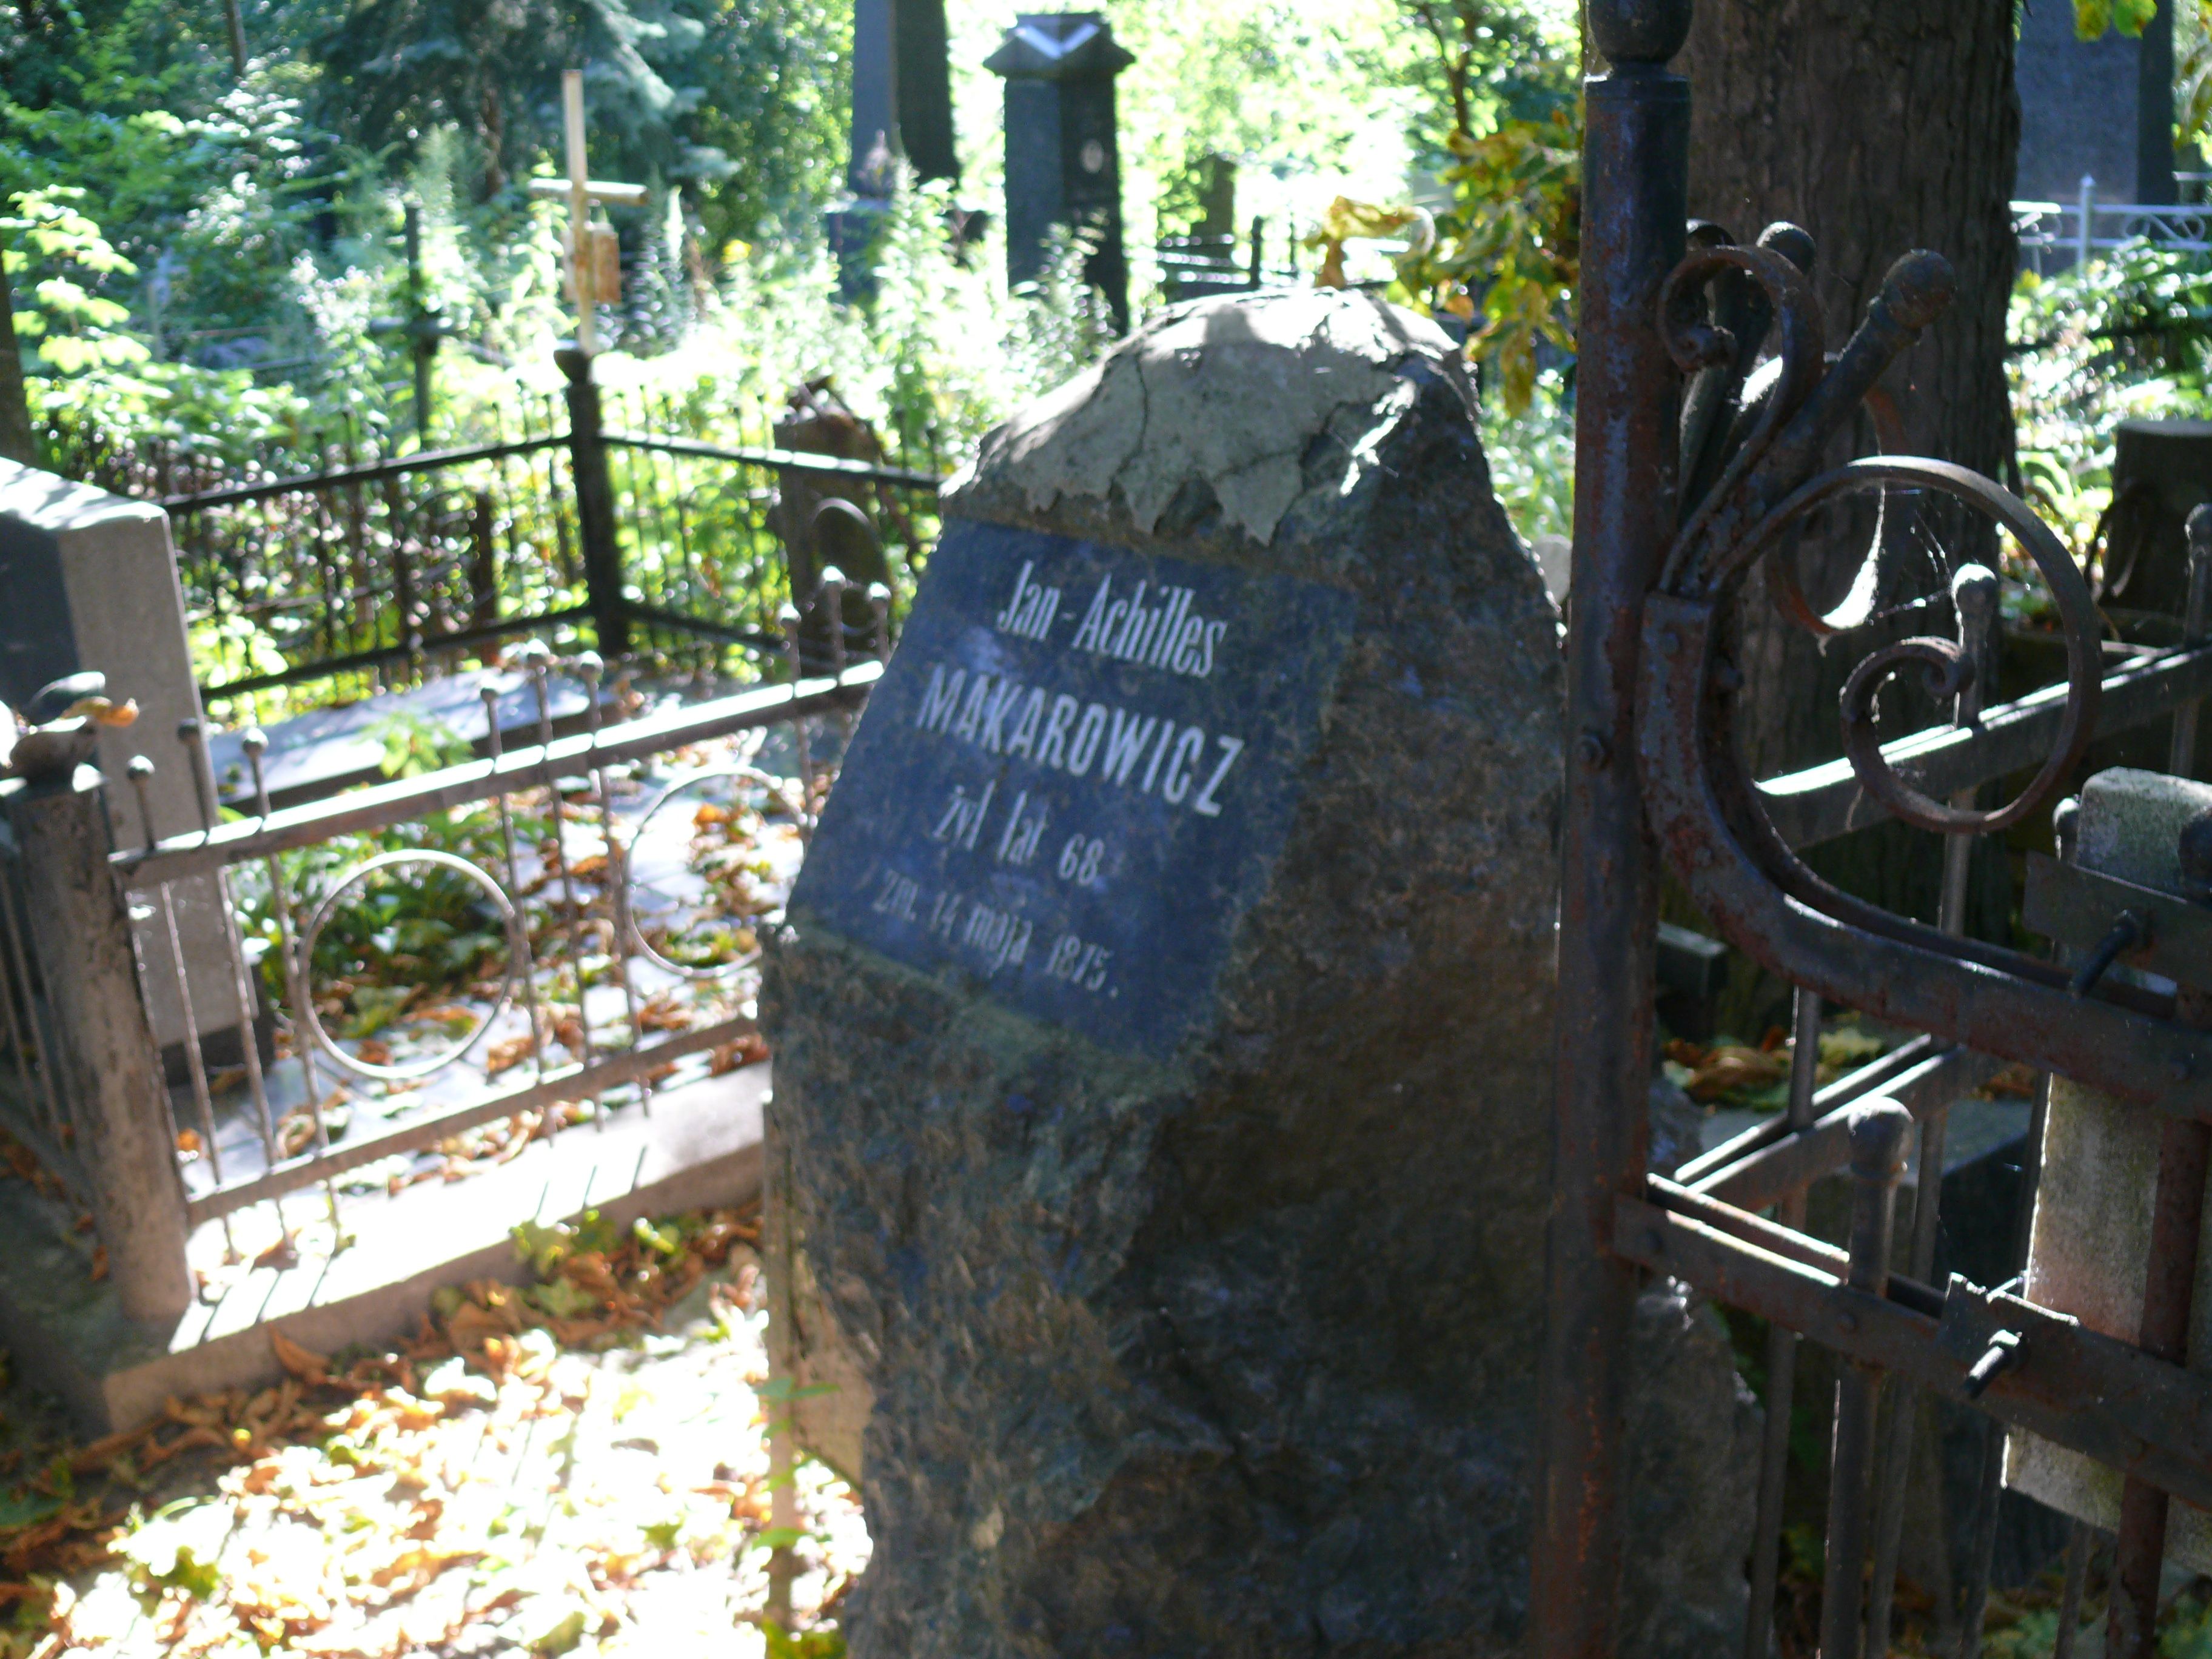 Tombstone of Jan Makarowicz